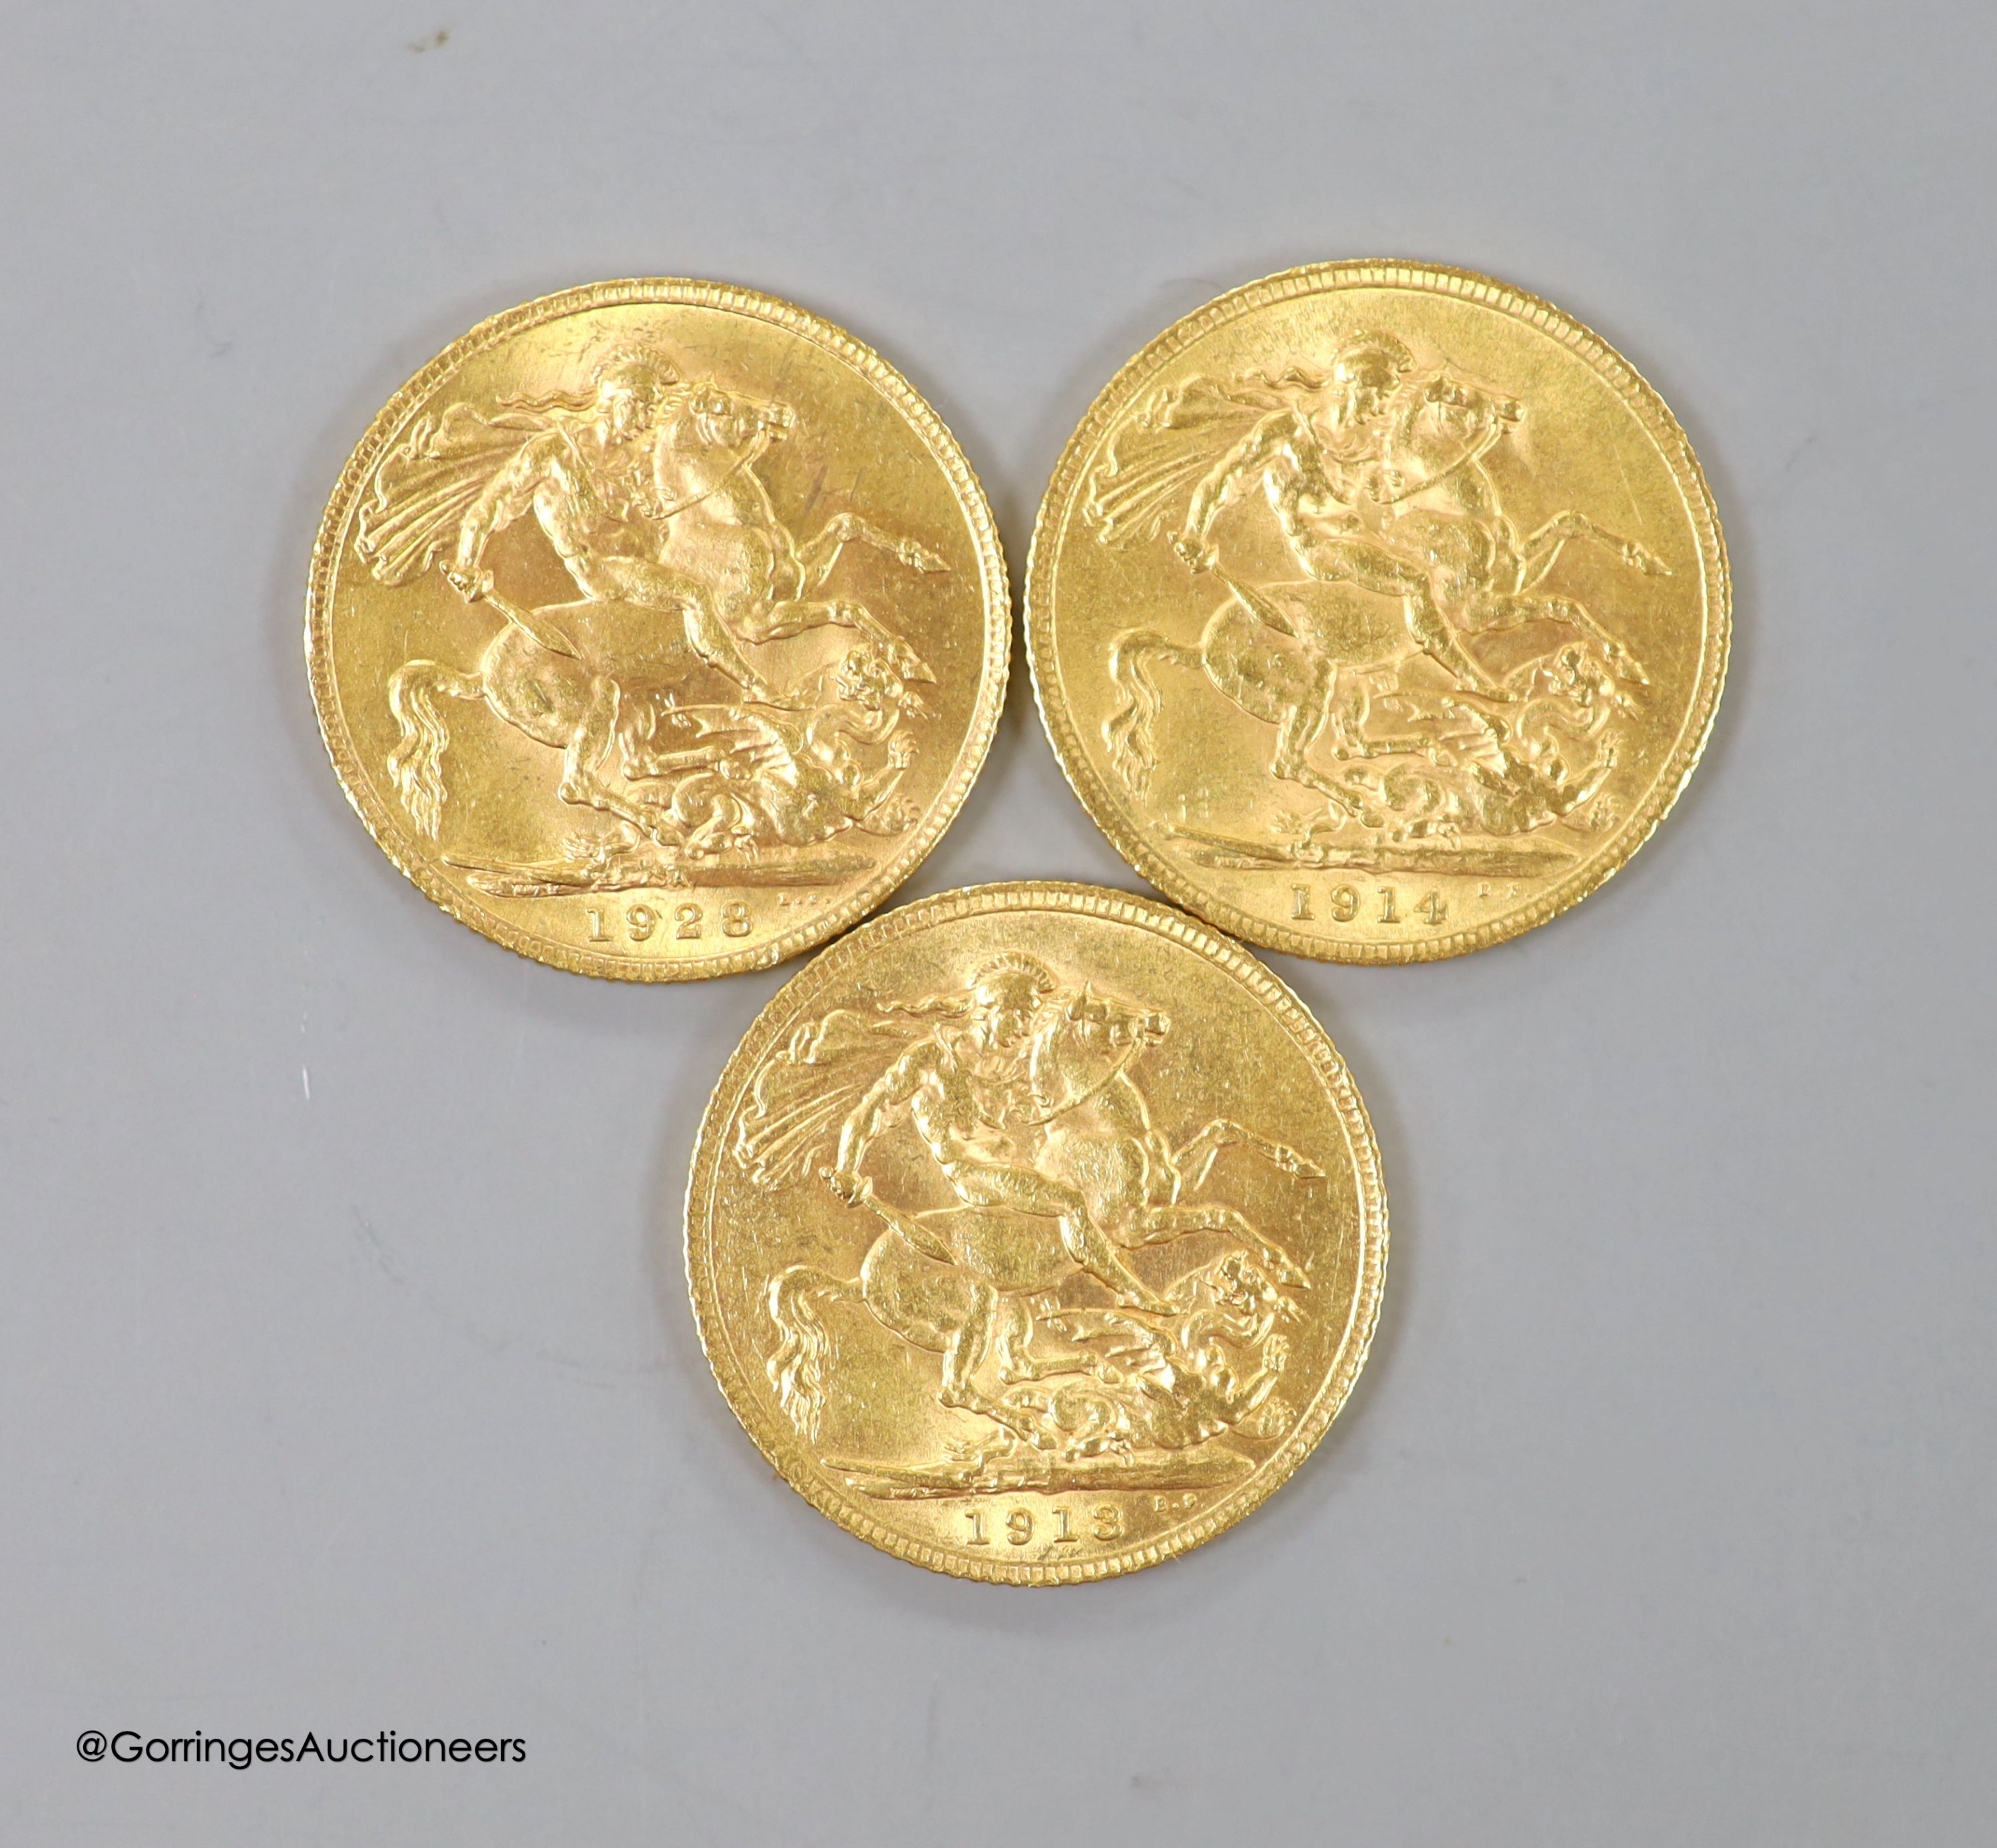 Three George V gold sovereigns, 1913, 1914 and 1928SA